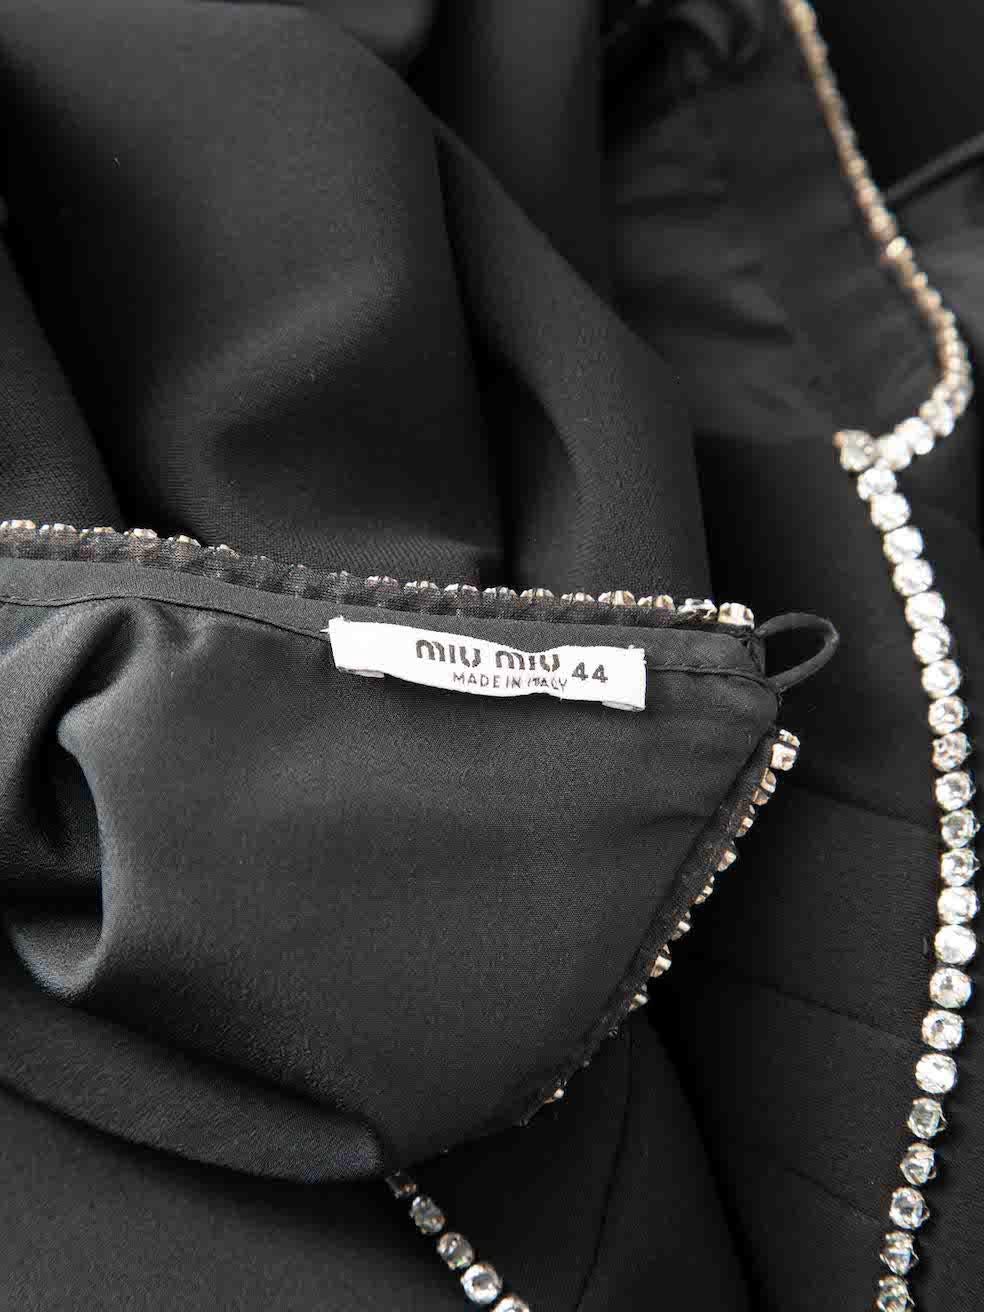 Miu Miu Black Embellished Open Back Dress Size L For Sale 4